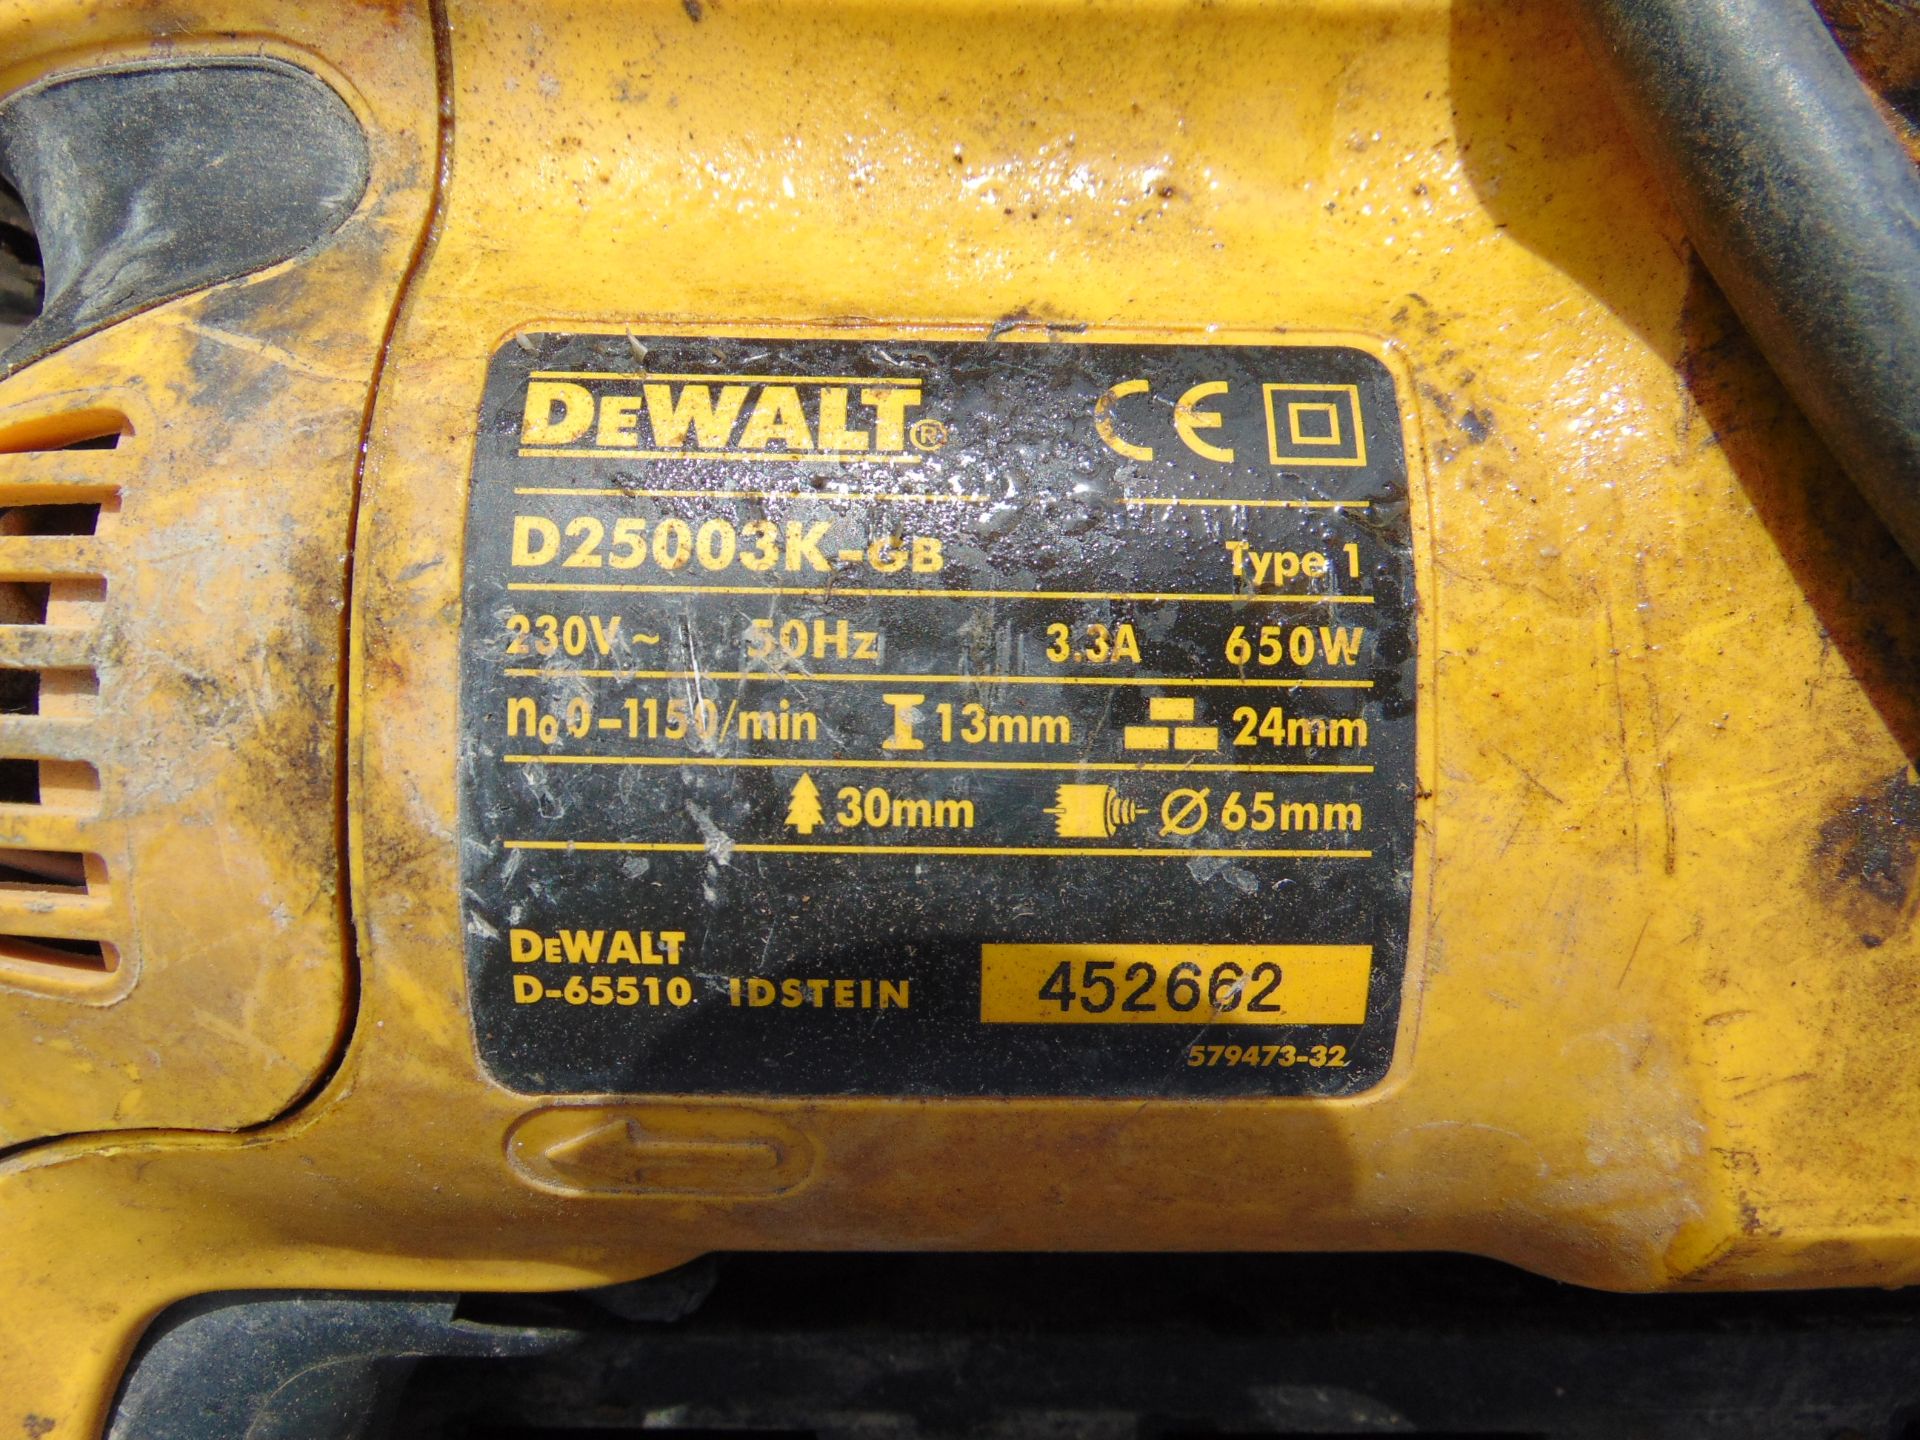 Dewalt D25003K Hammer Drill - Image 4 of 4